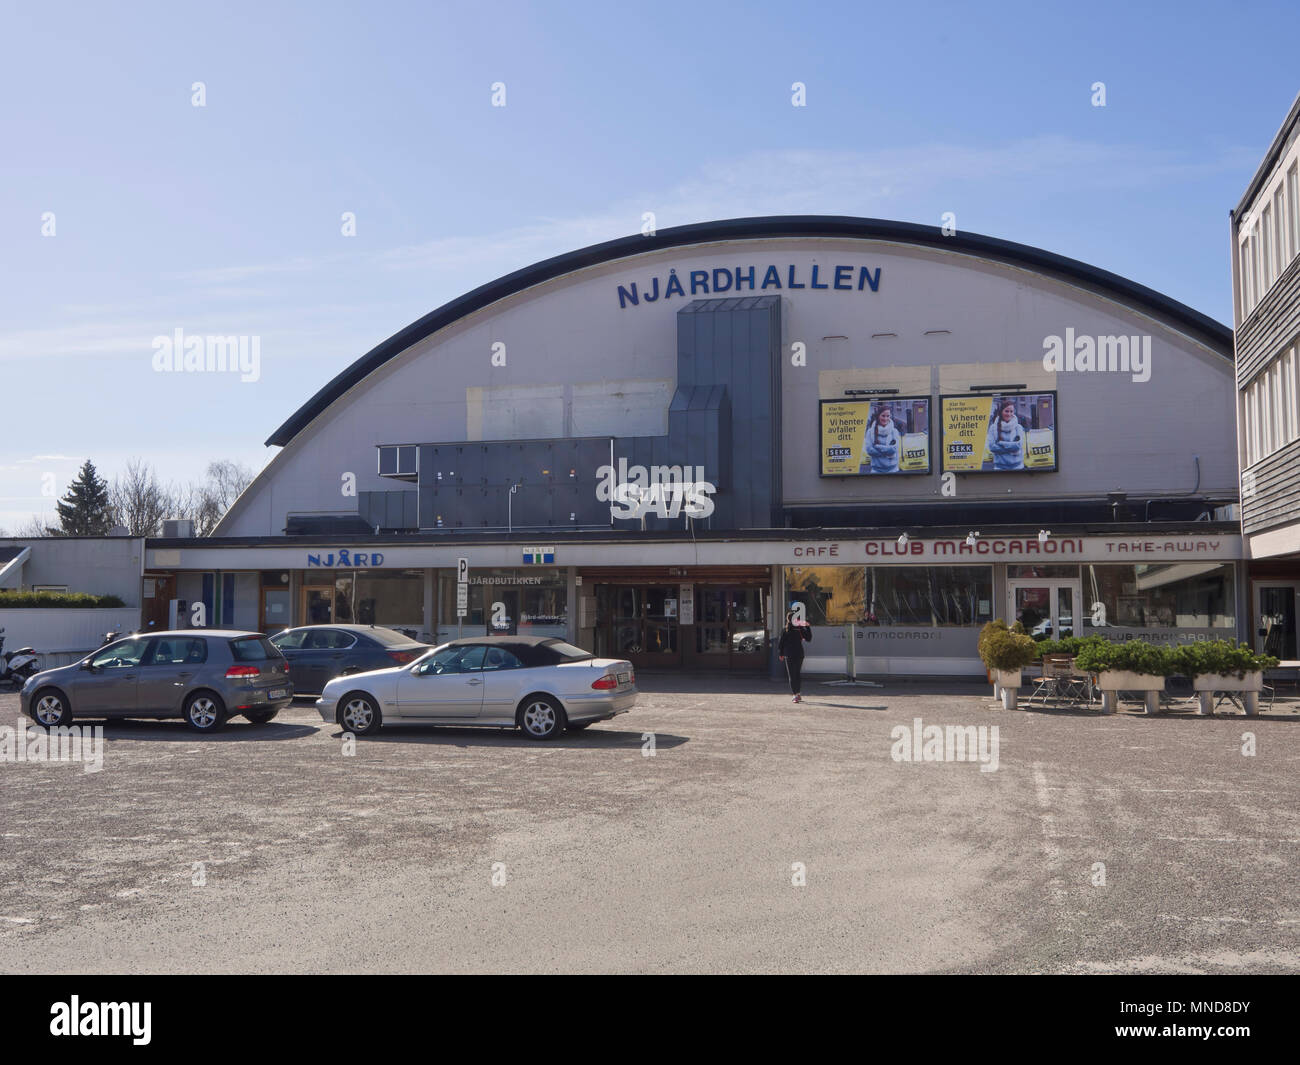 Njårdhallen,un estadio en los suburbios occidentales de Oslo Noruega, solía ser un escenario de conciertos, construido ca 1960 Foto de stock